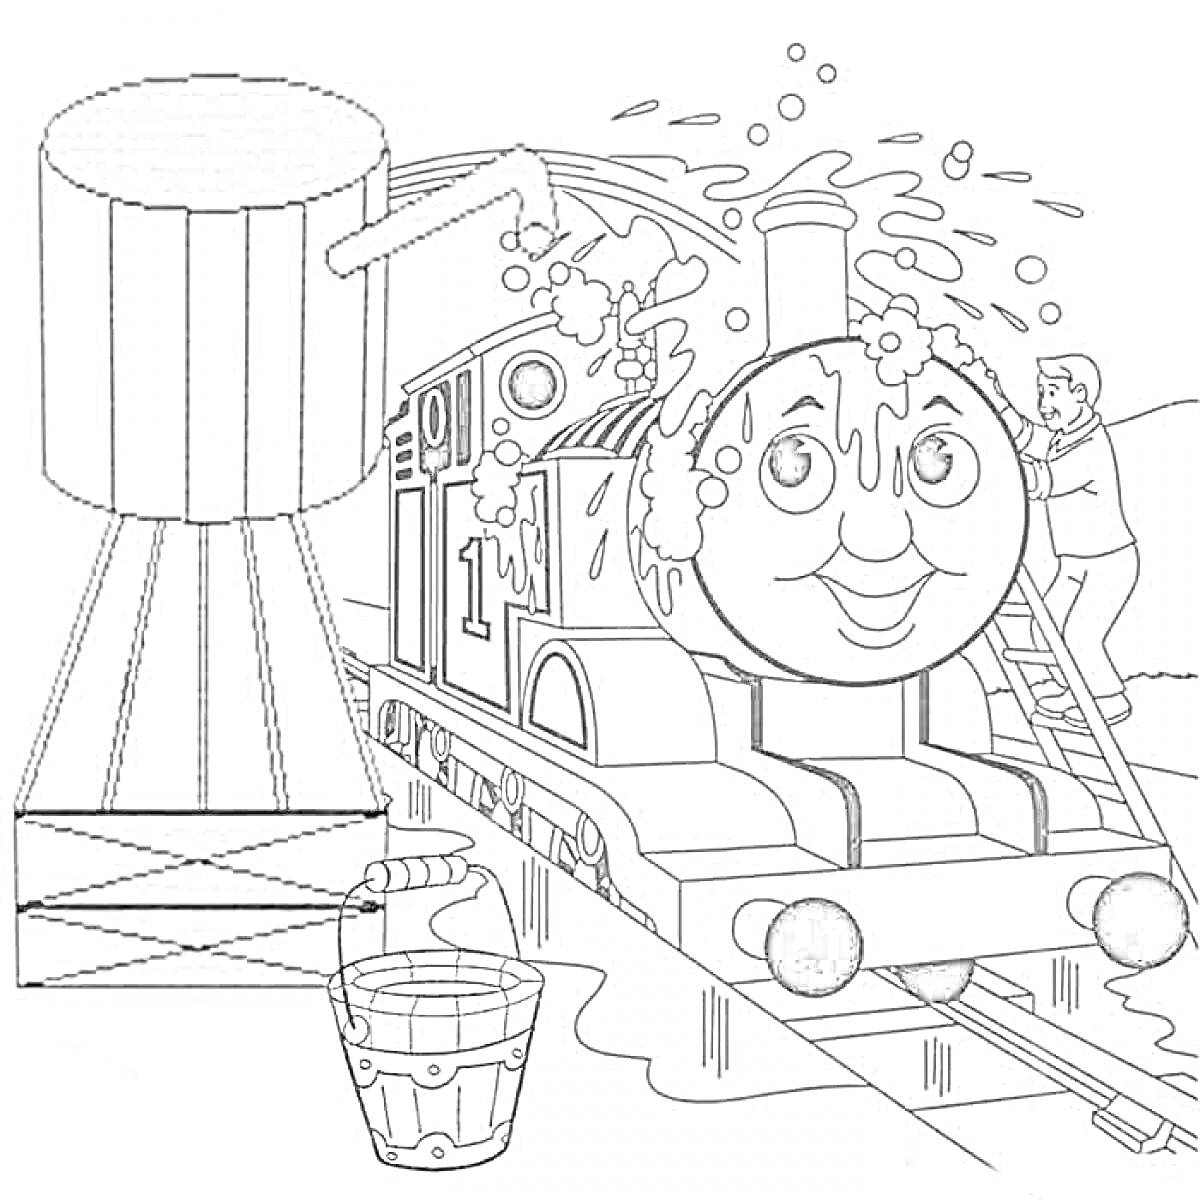 Раскраска Паровозик Томас на станции, моется водой из бака, рядом ведро и человек с лестницей